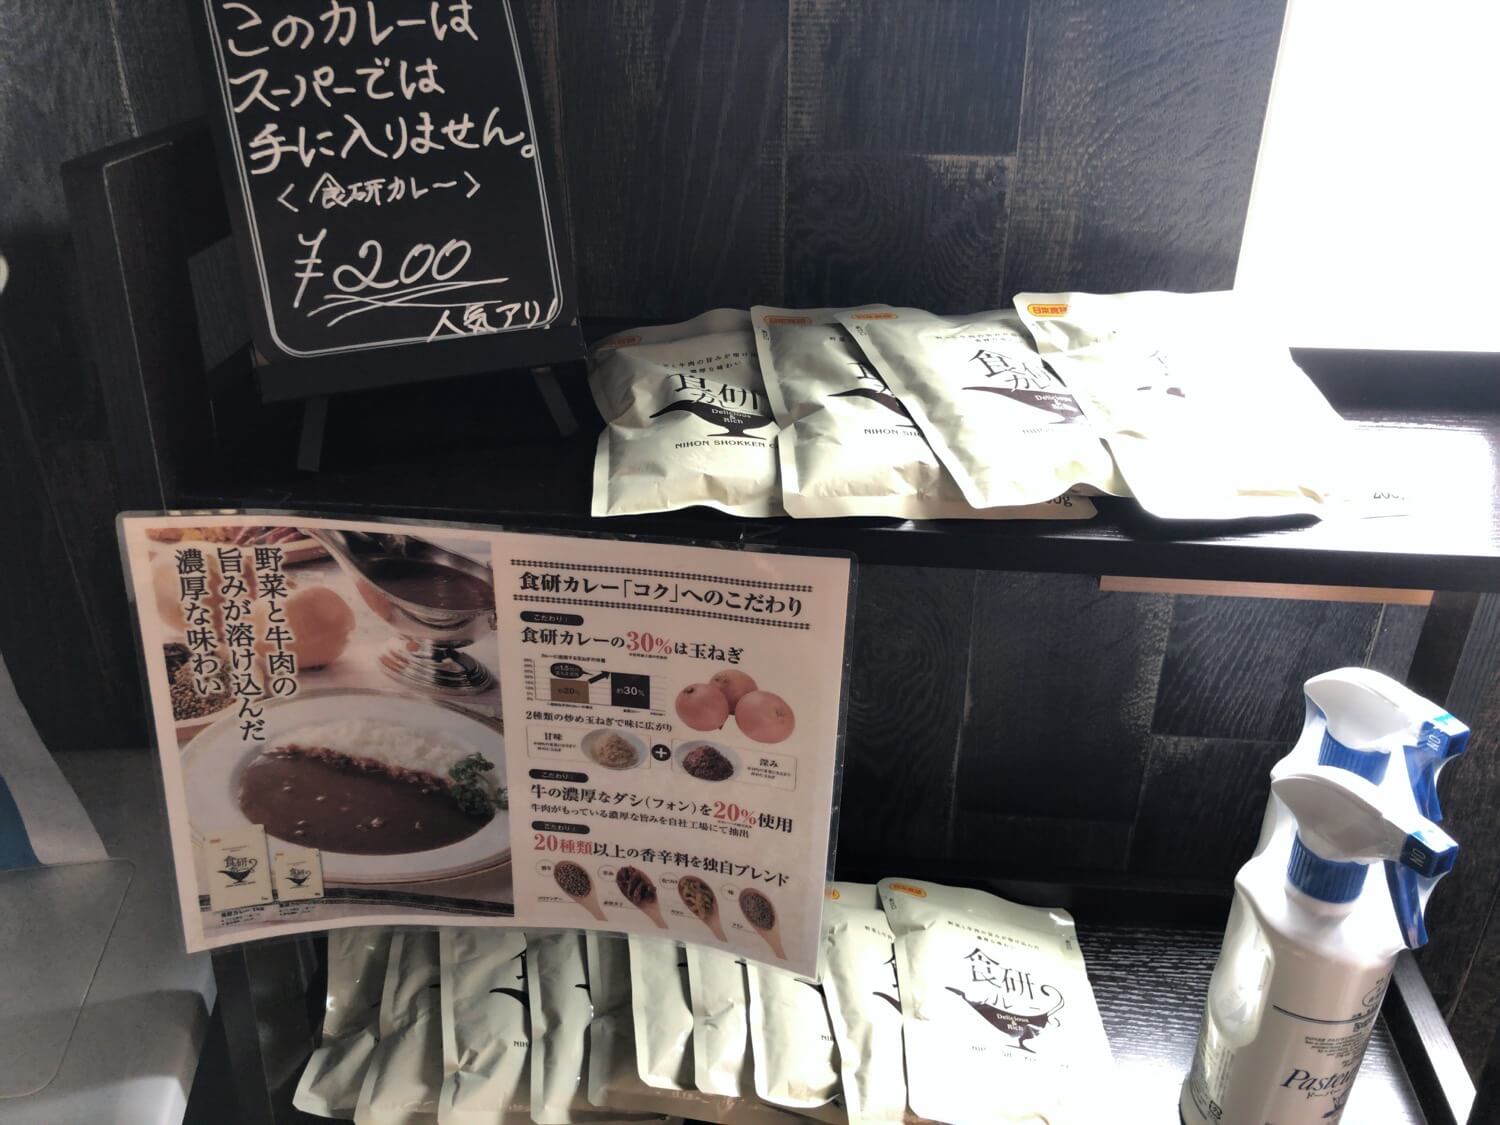 静内peekabooで販売されている日本食研のレトルトカレー